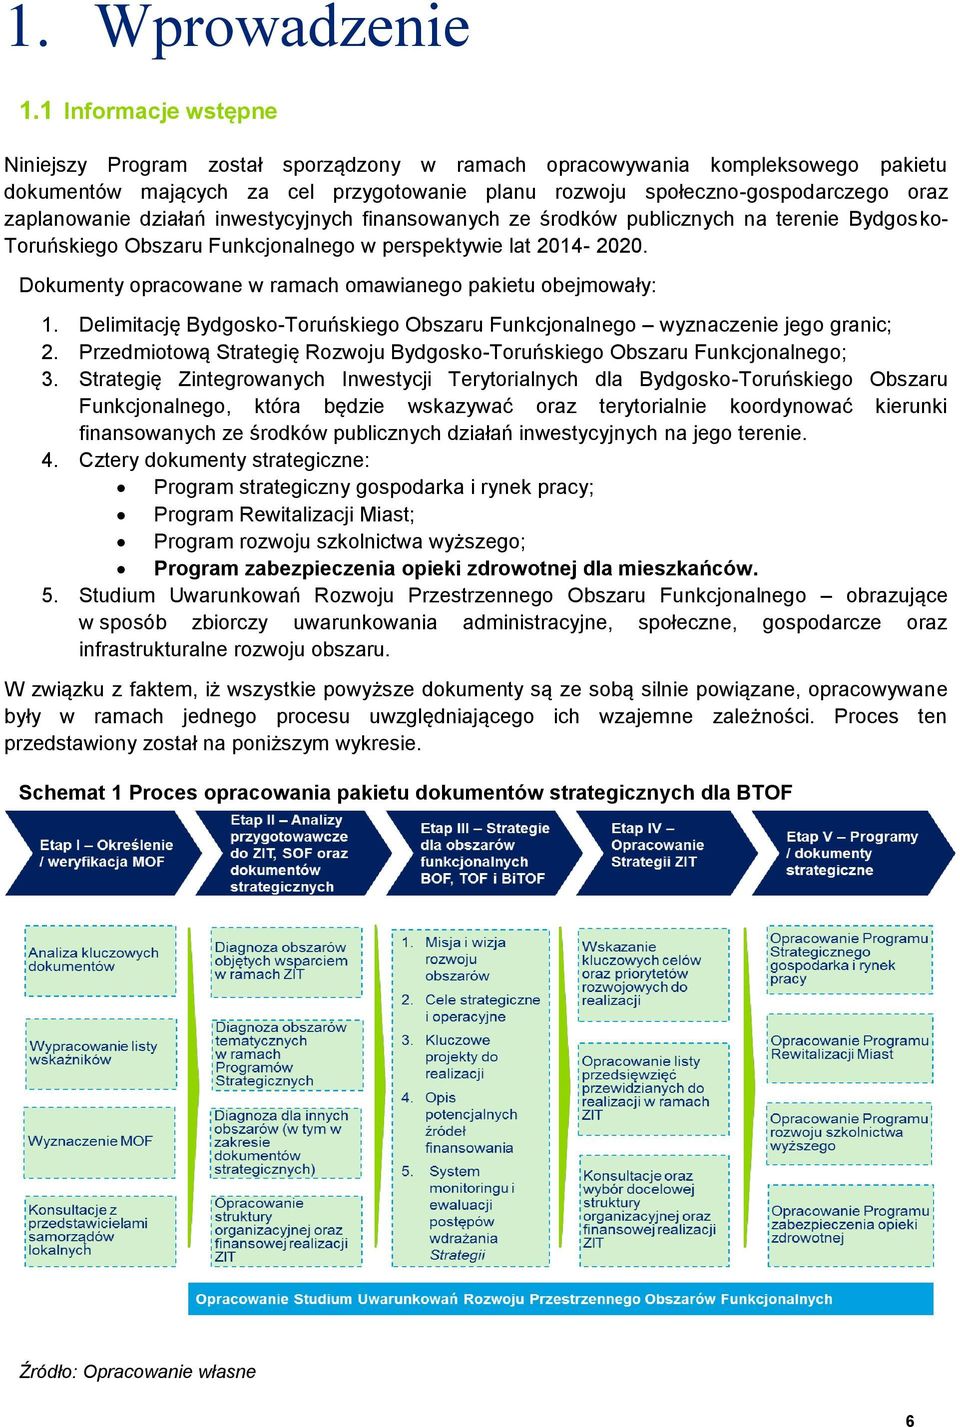 działań inwestycyjnych finansowanych ze środków publicznych na terenie Bydgosko- Toruńskiego Obszaru Funkcjonalnego w perspektywie lat 2014-2020.